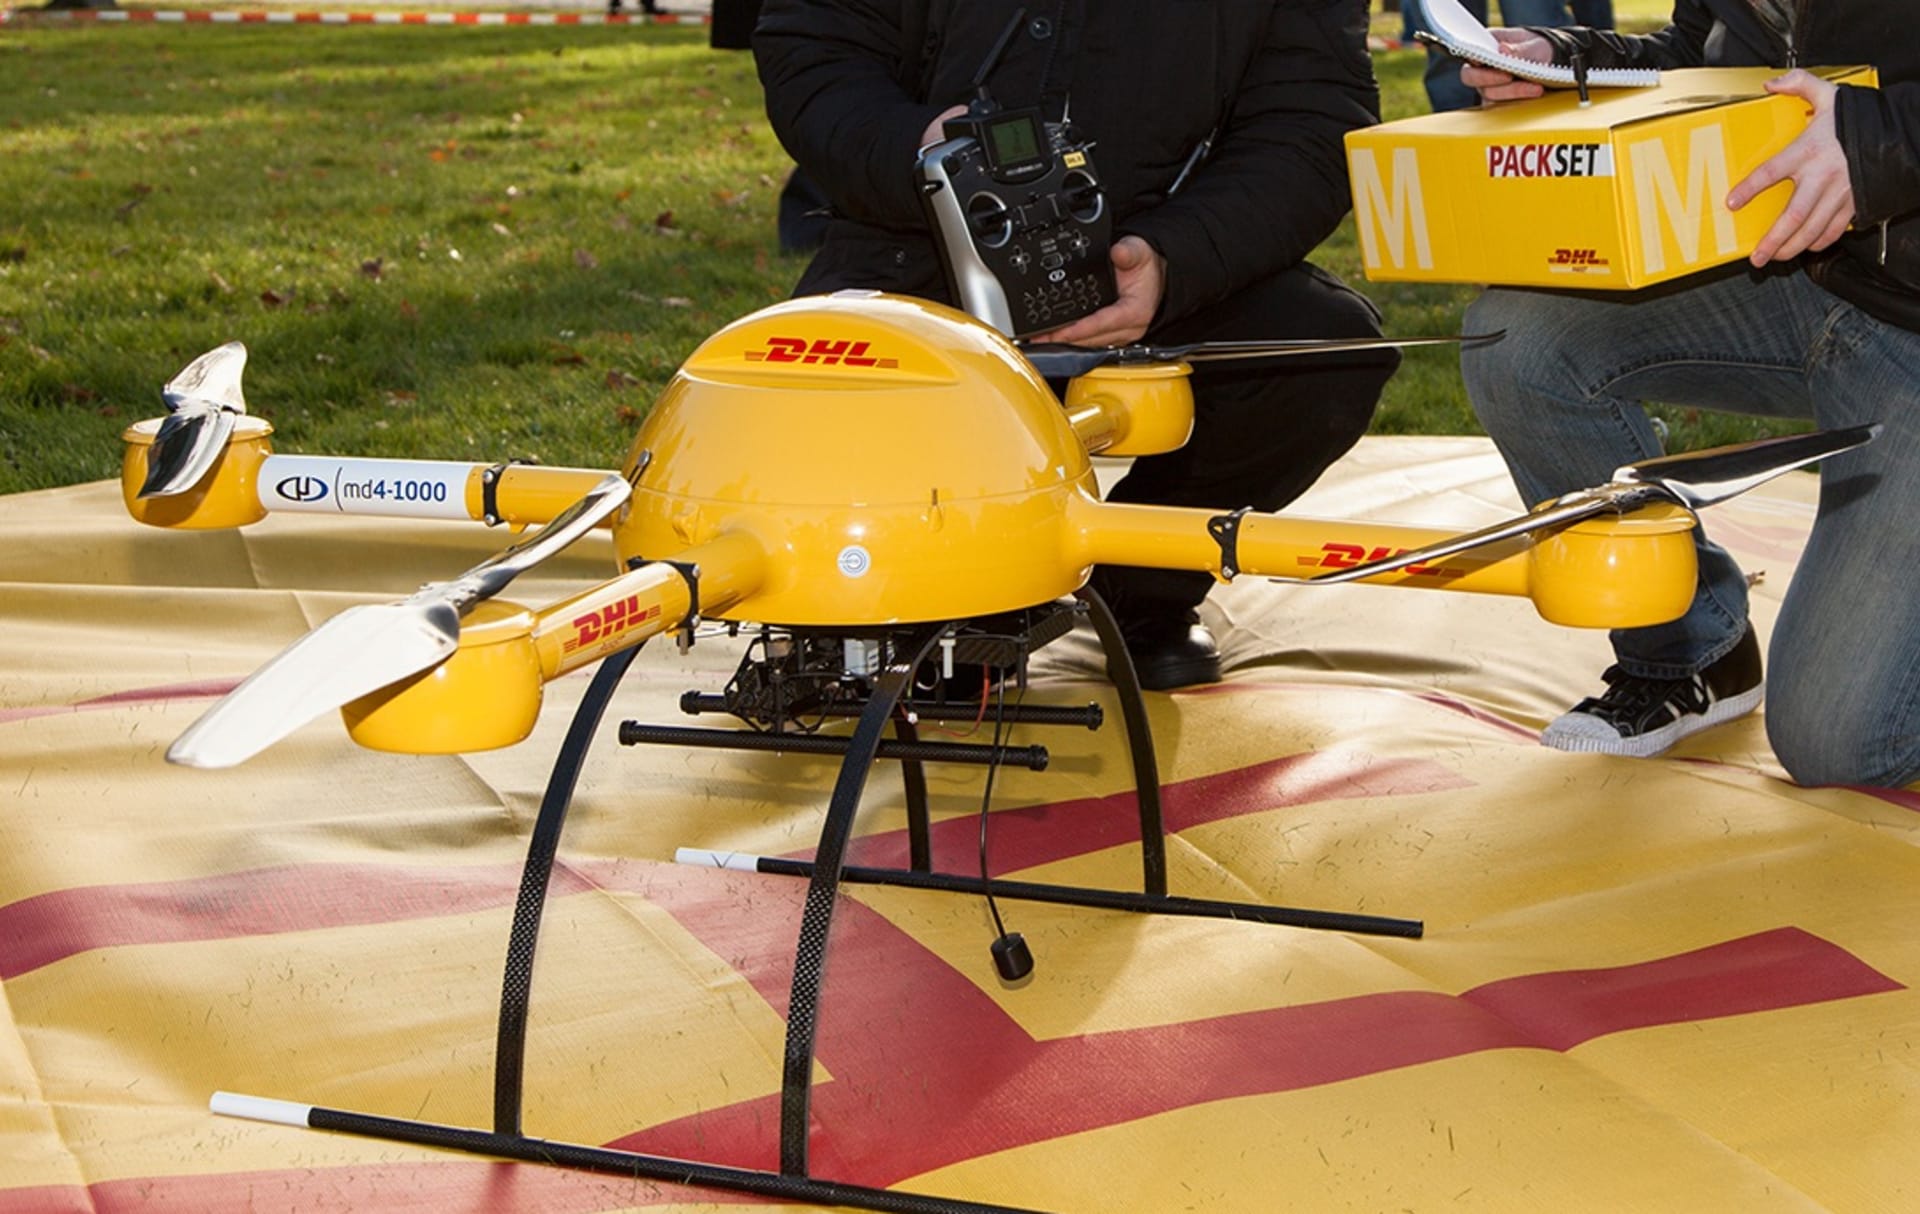 dron - pošťák nedaleké budoucnosti